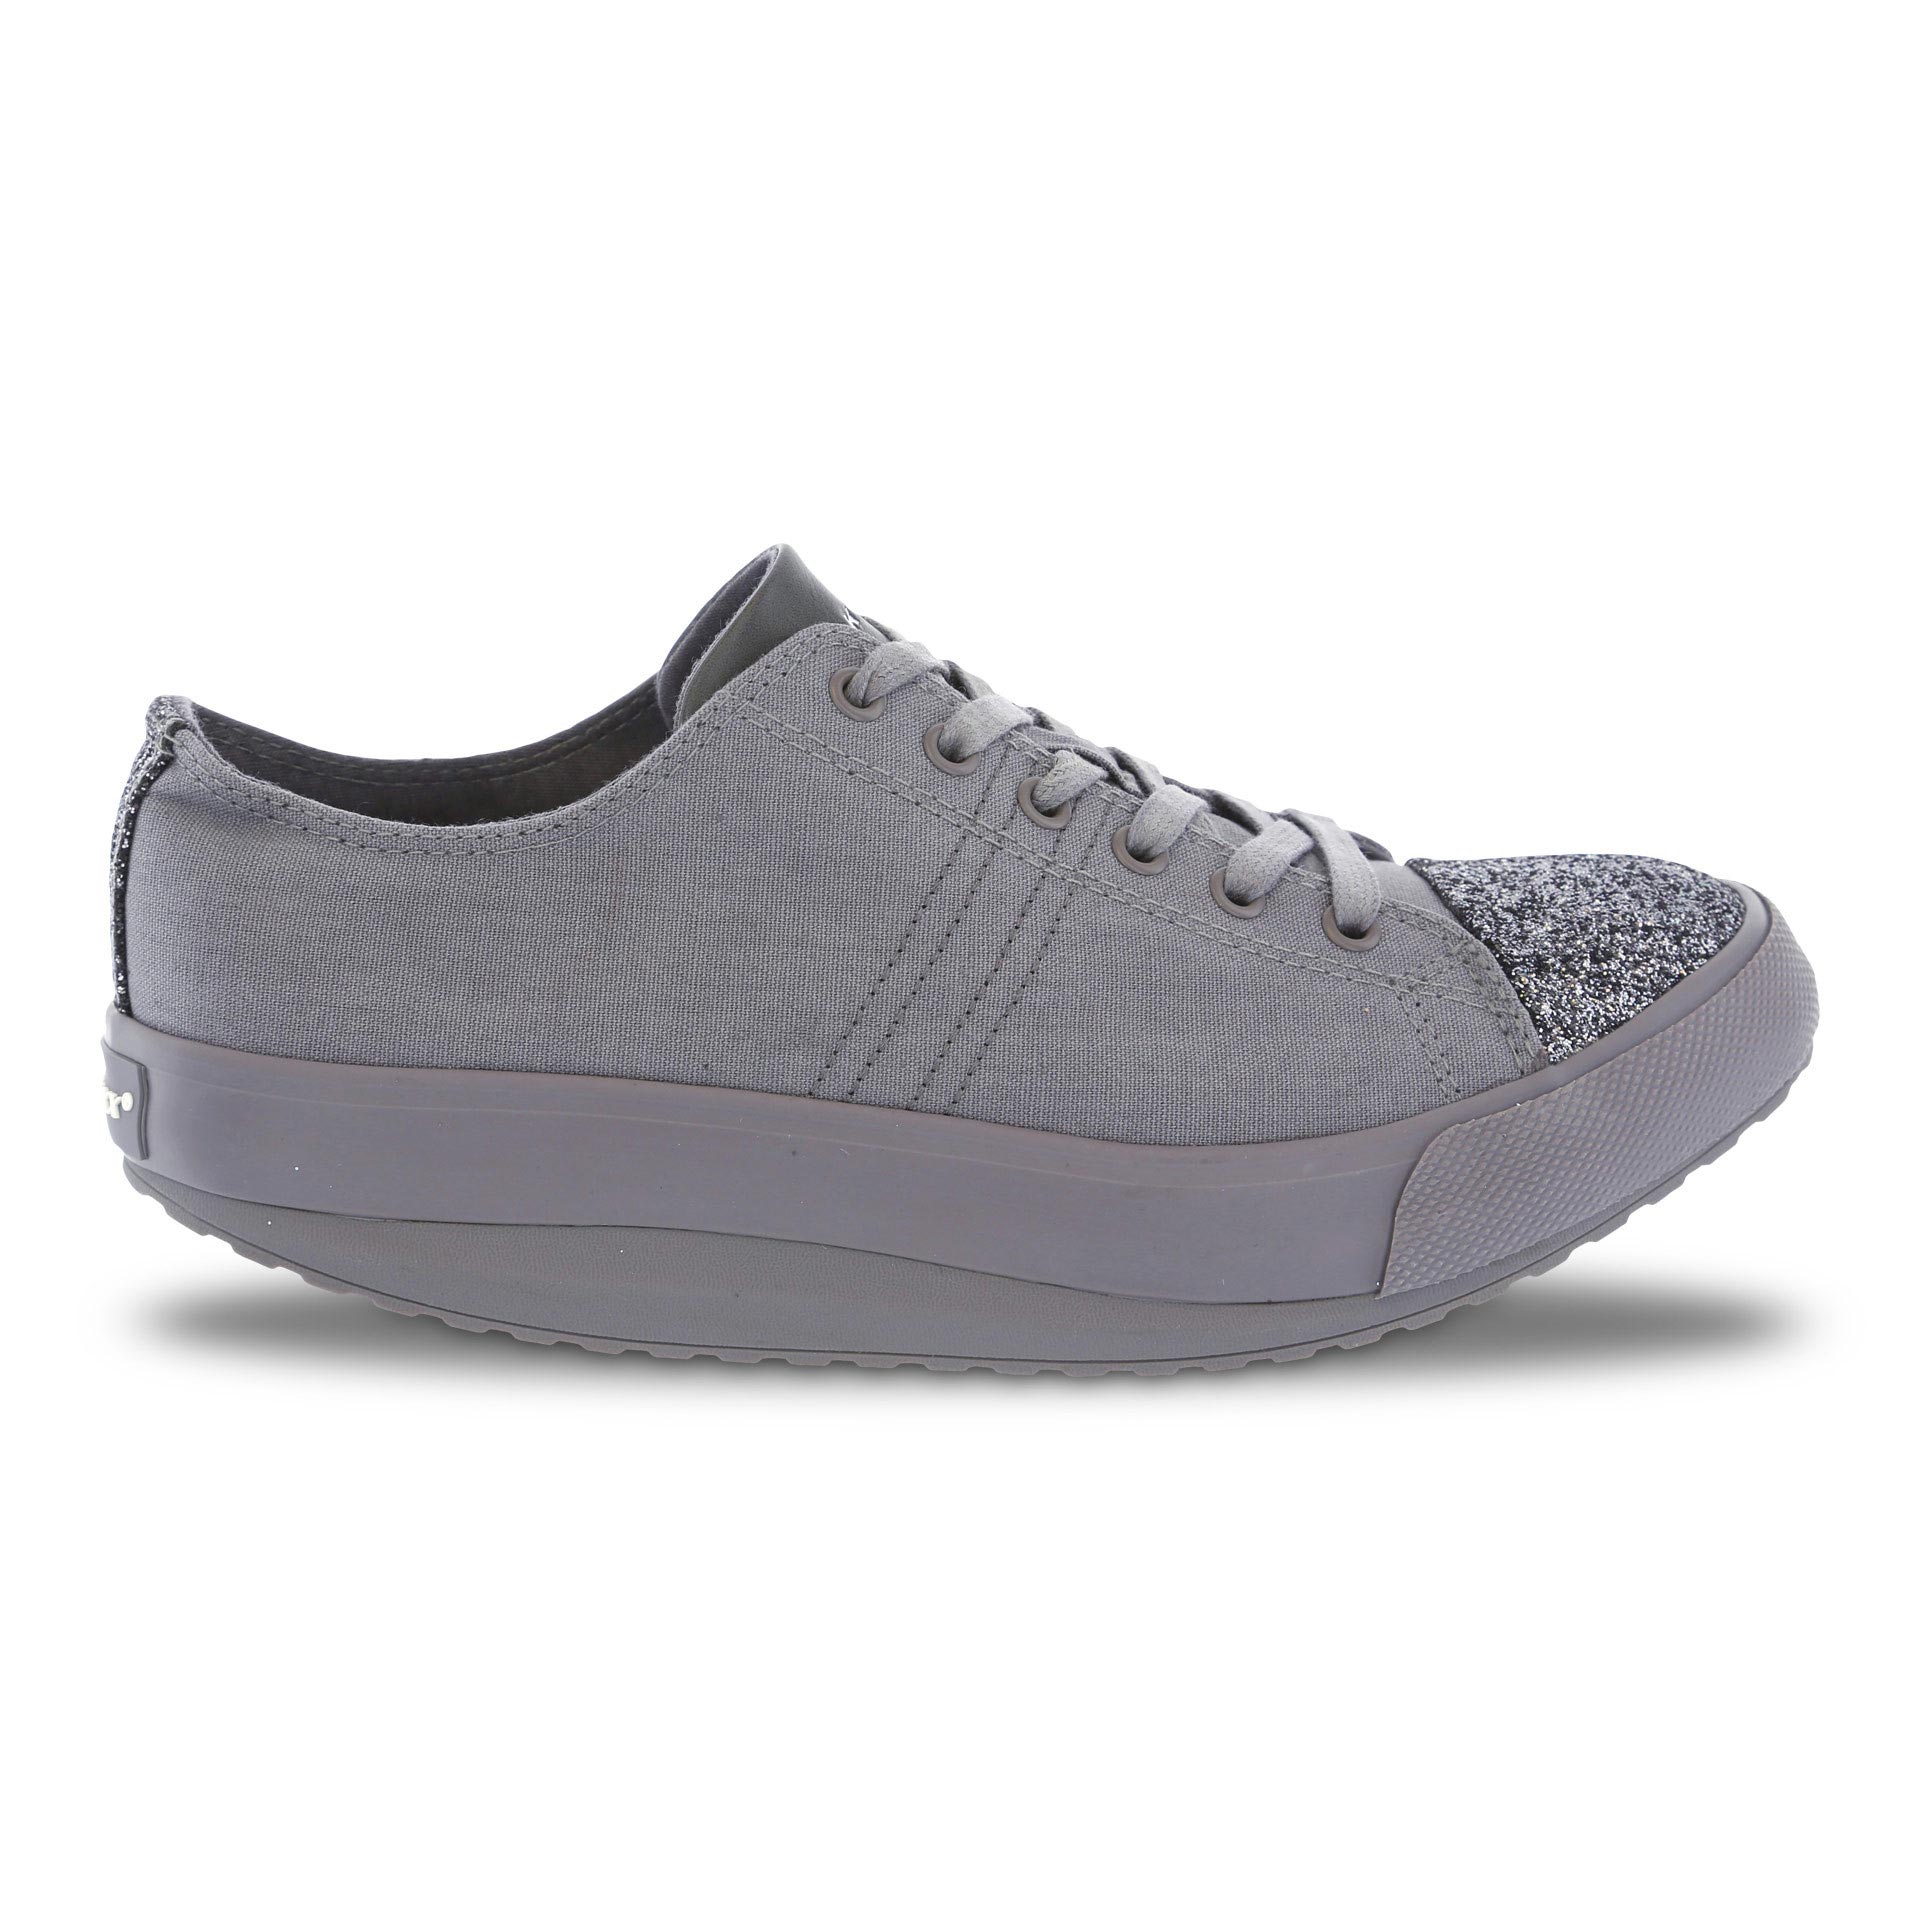 Walkmaxx Leisure Glitter shoes grey